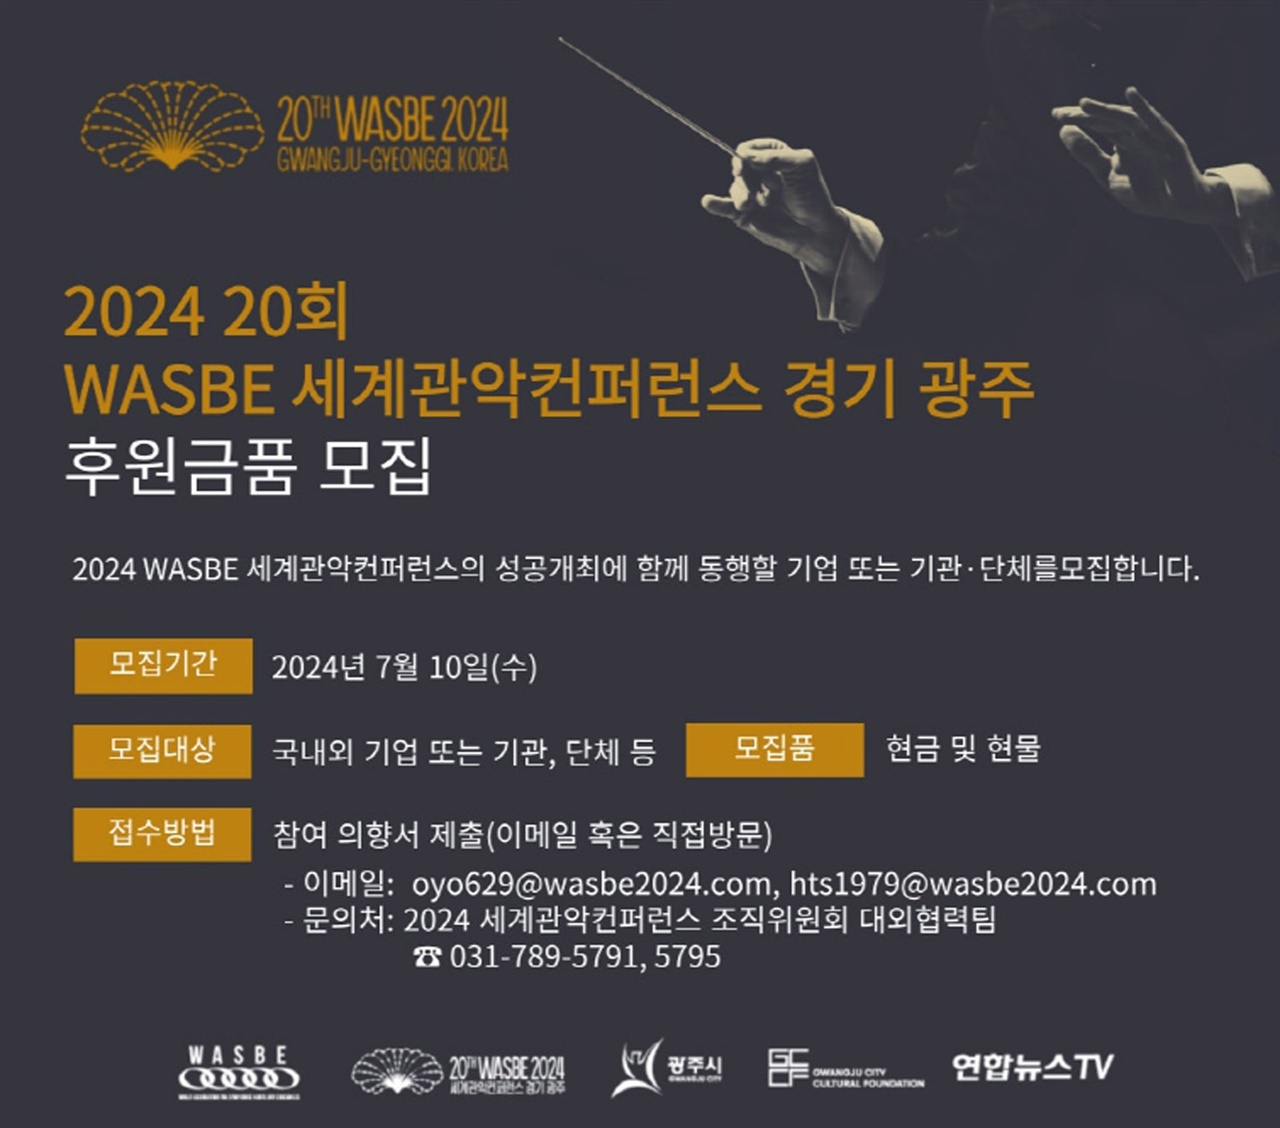 2024 세계관악컨퍼런스 조직위원회는 오는 7월 경기 광주시에서 개최되는 2024 제20회 WASBE 세계관악컨퍼런스를 후원할 개인 및 기관ㆍ단체를 공개 모집한다.